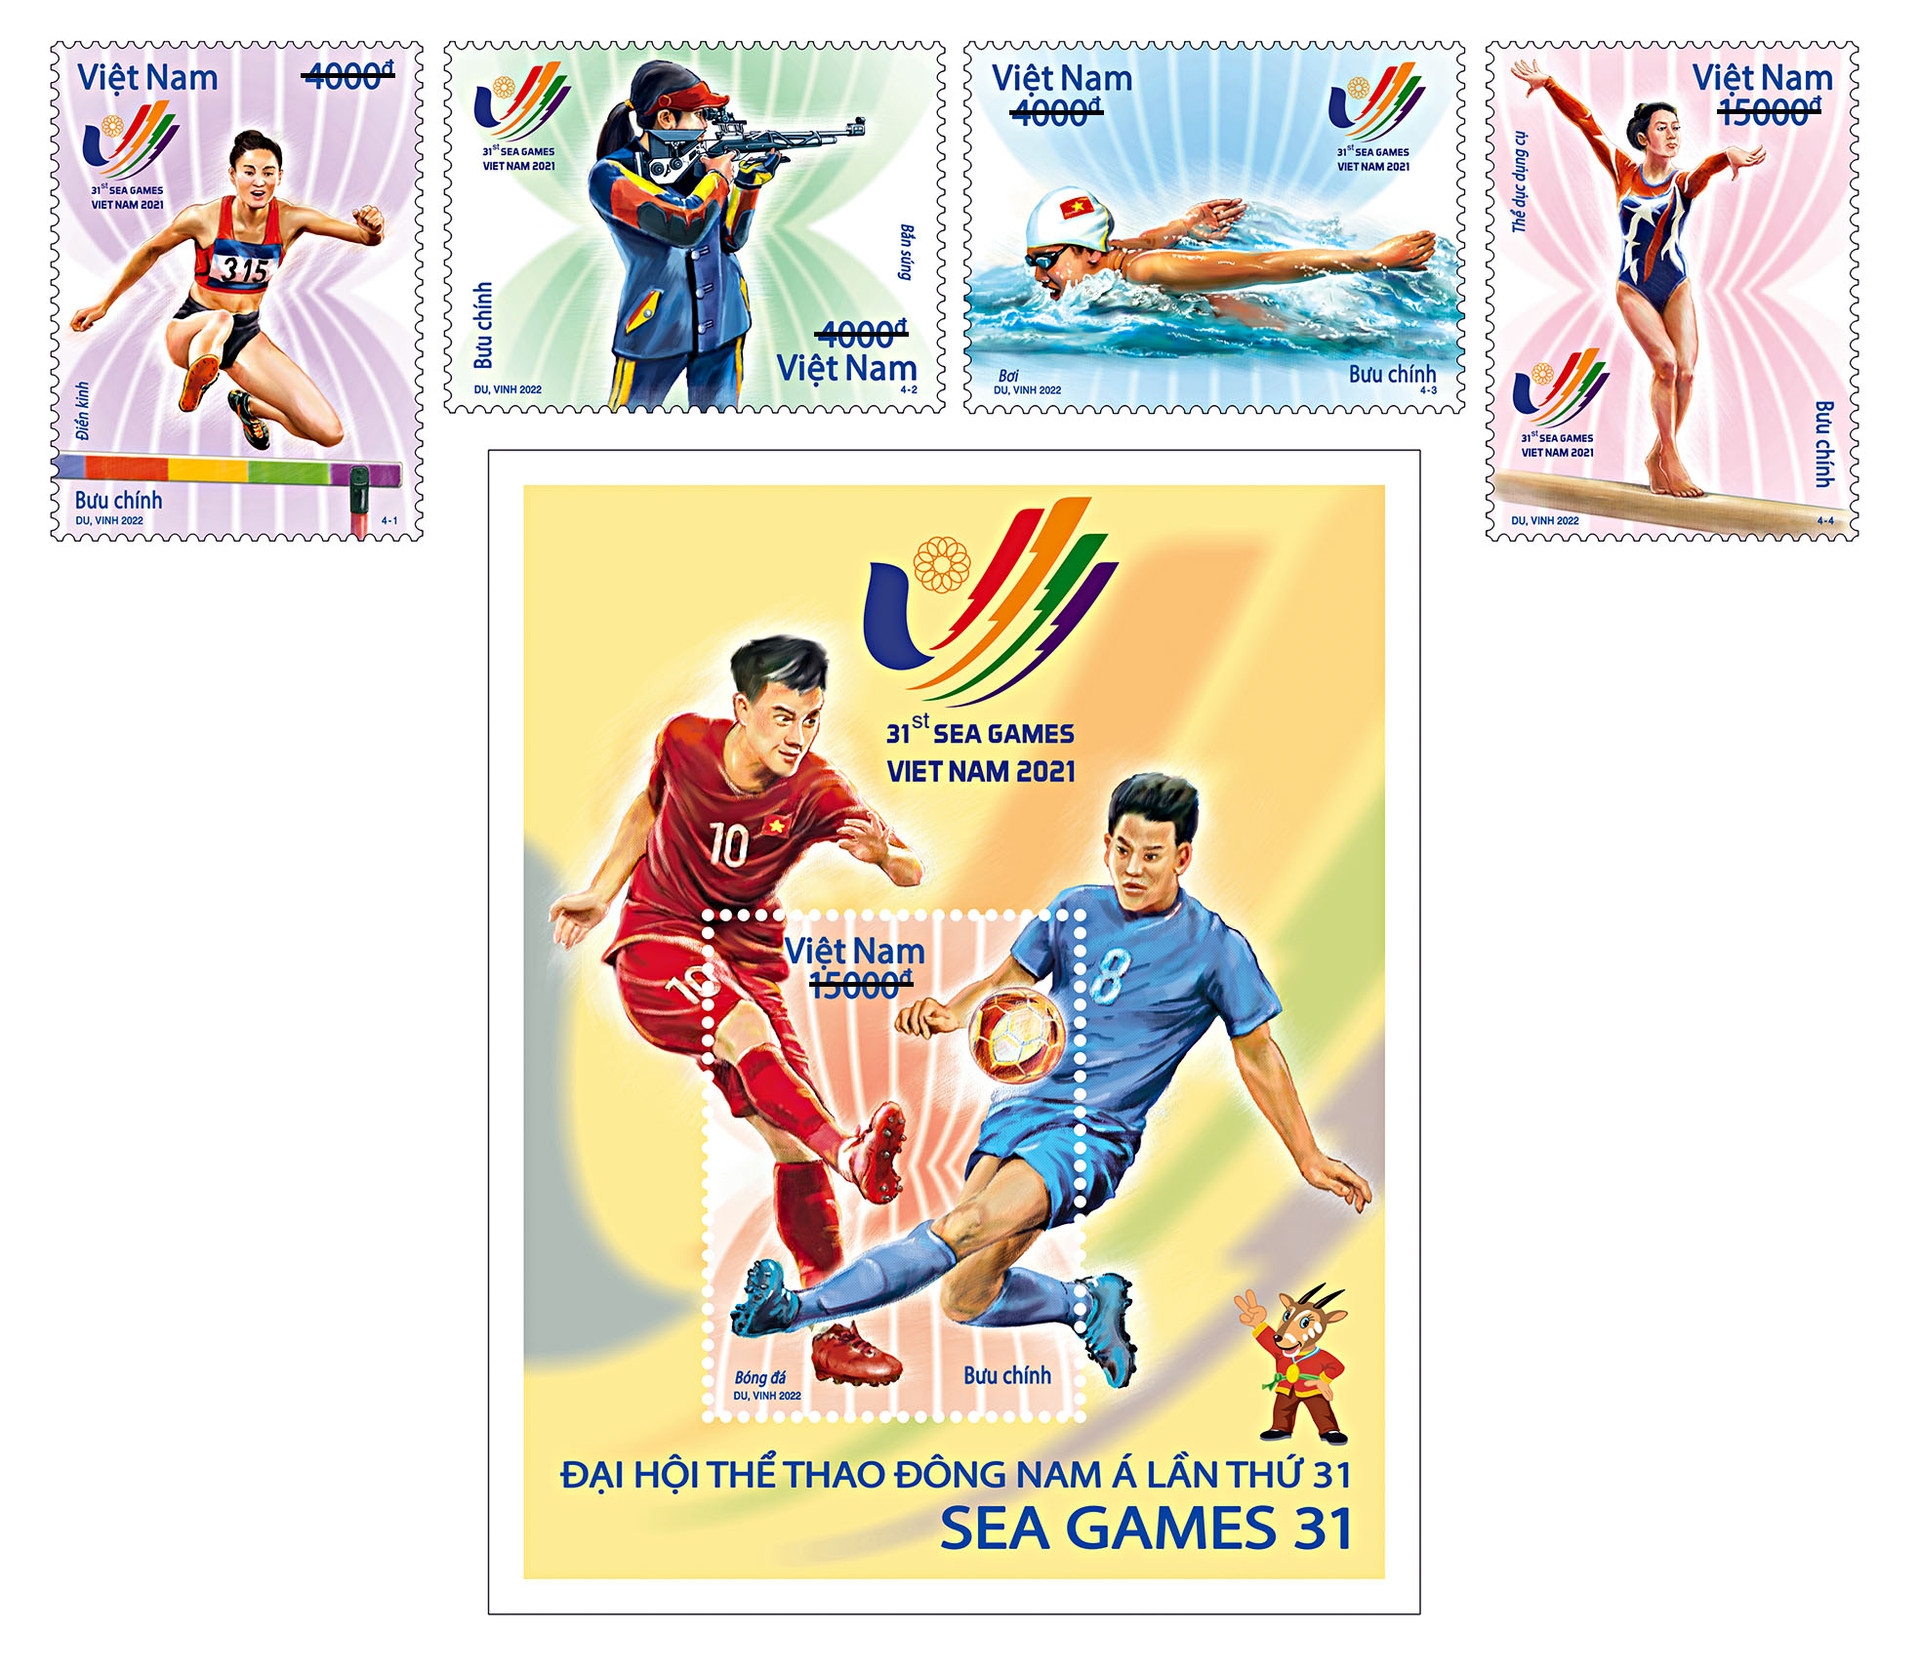 Phát hành bộ tem bưu chính giới thiệu các môn thể thao thế mạnh của Việt Nam, chào mừng SEA Games 31 - Ảnh 1.